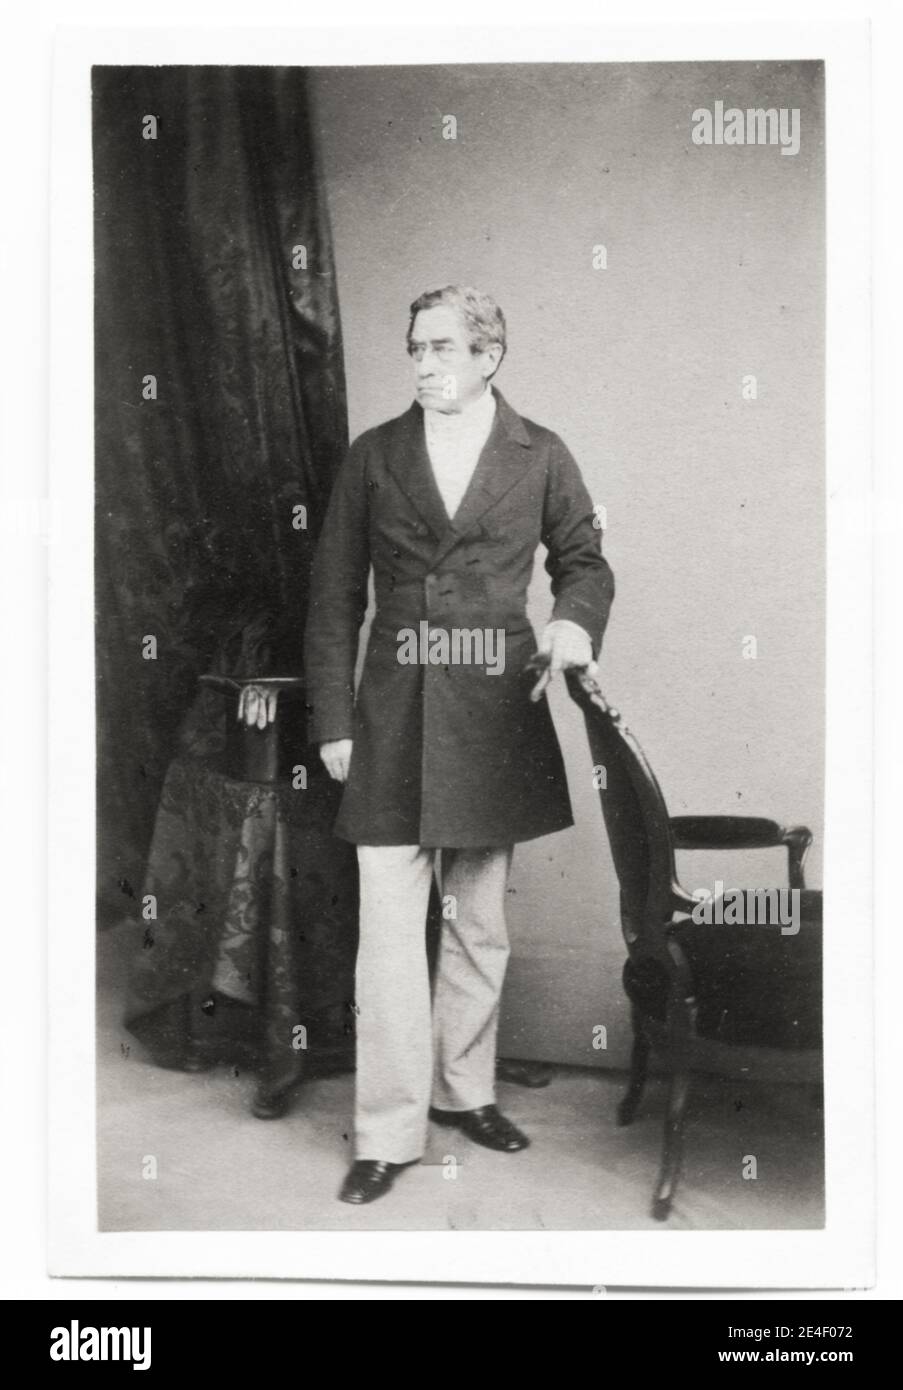 Photographie vintage du XIXe siècle : Brownlow Cecil, 2e marquis d'Exeter KG PC (2 juillet 1795 – 16 janvier 1867), appelée Lord Burghley jusqu'en 1804, était un pair britannique, courtier et politicien conservateur. Banque D'Images